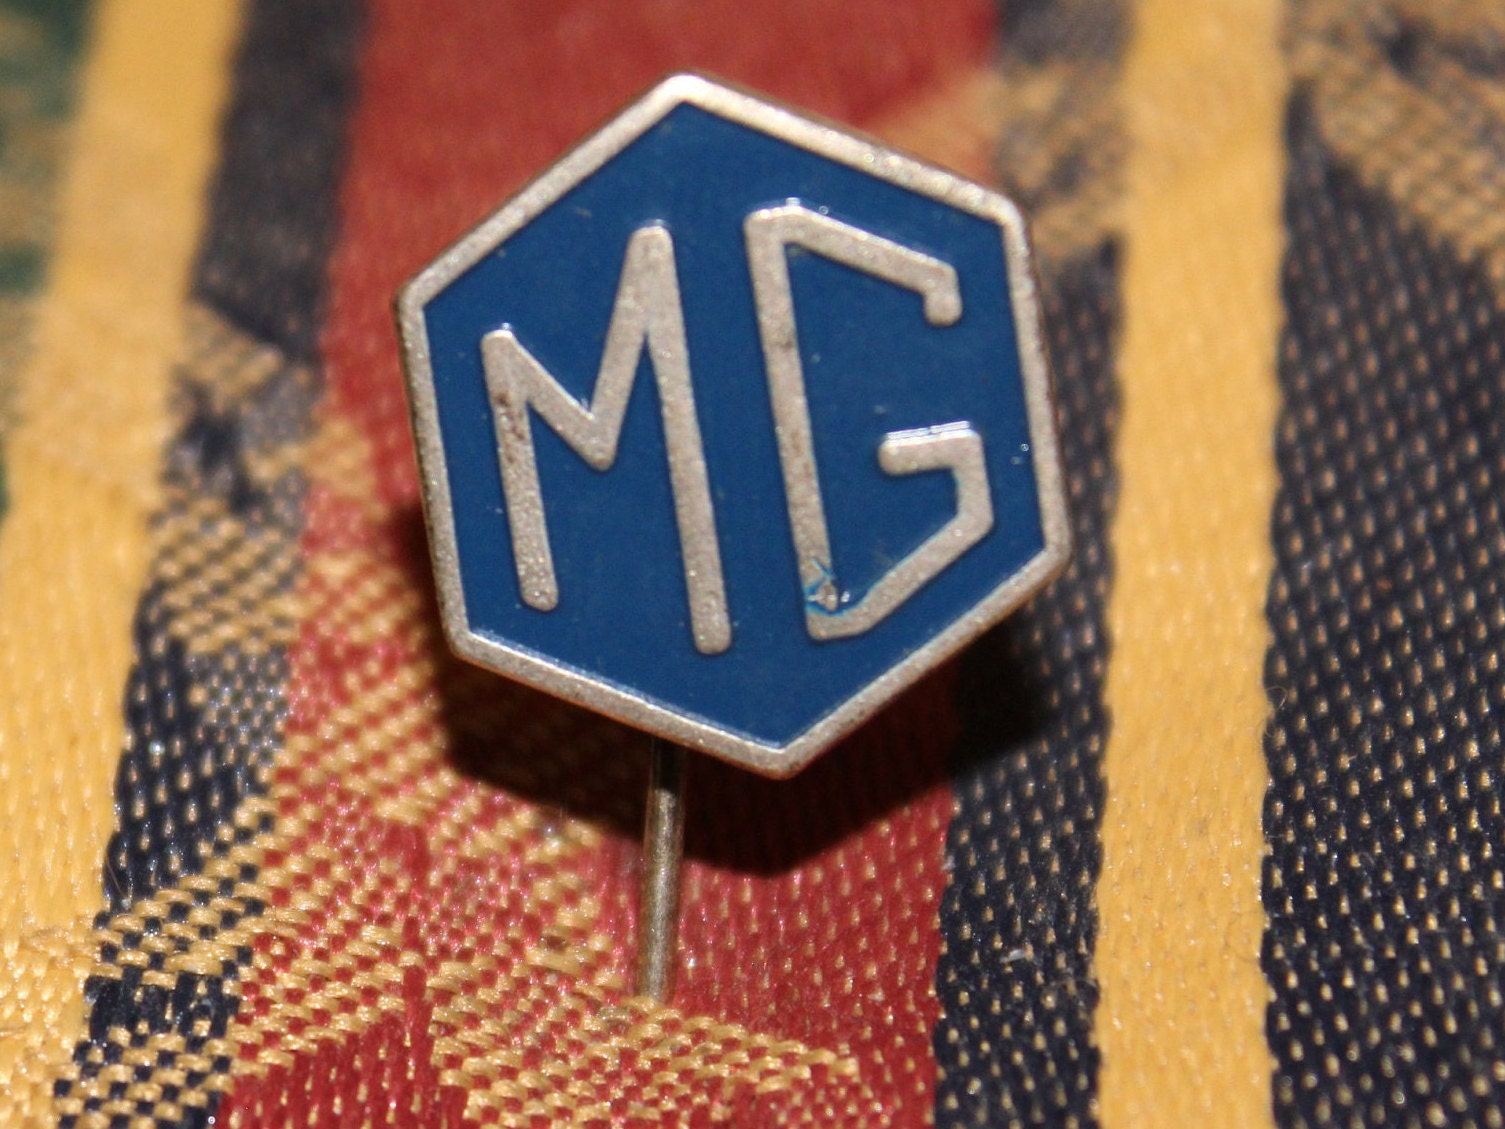 MG Morris Garages Hoodie, Embroidered Logo Sweatshirt